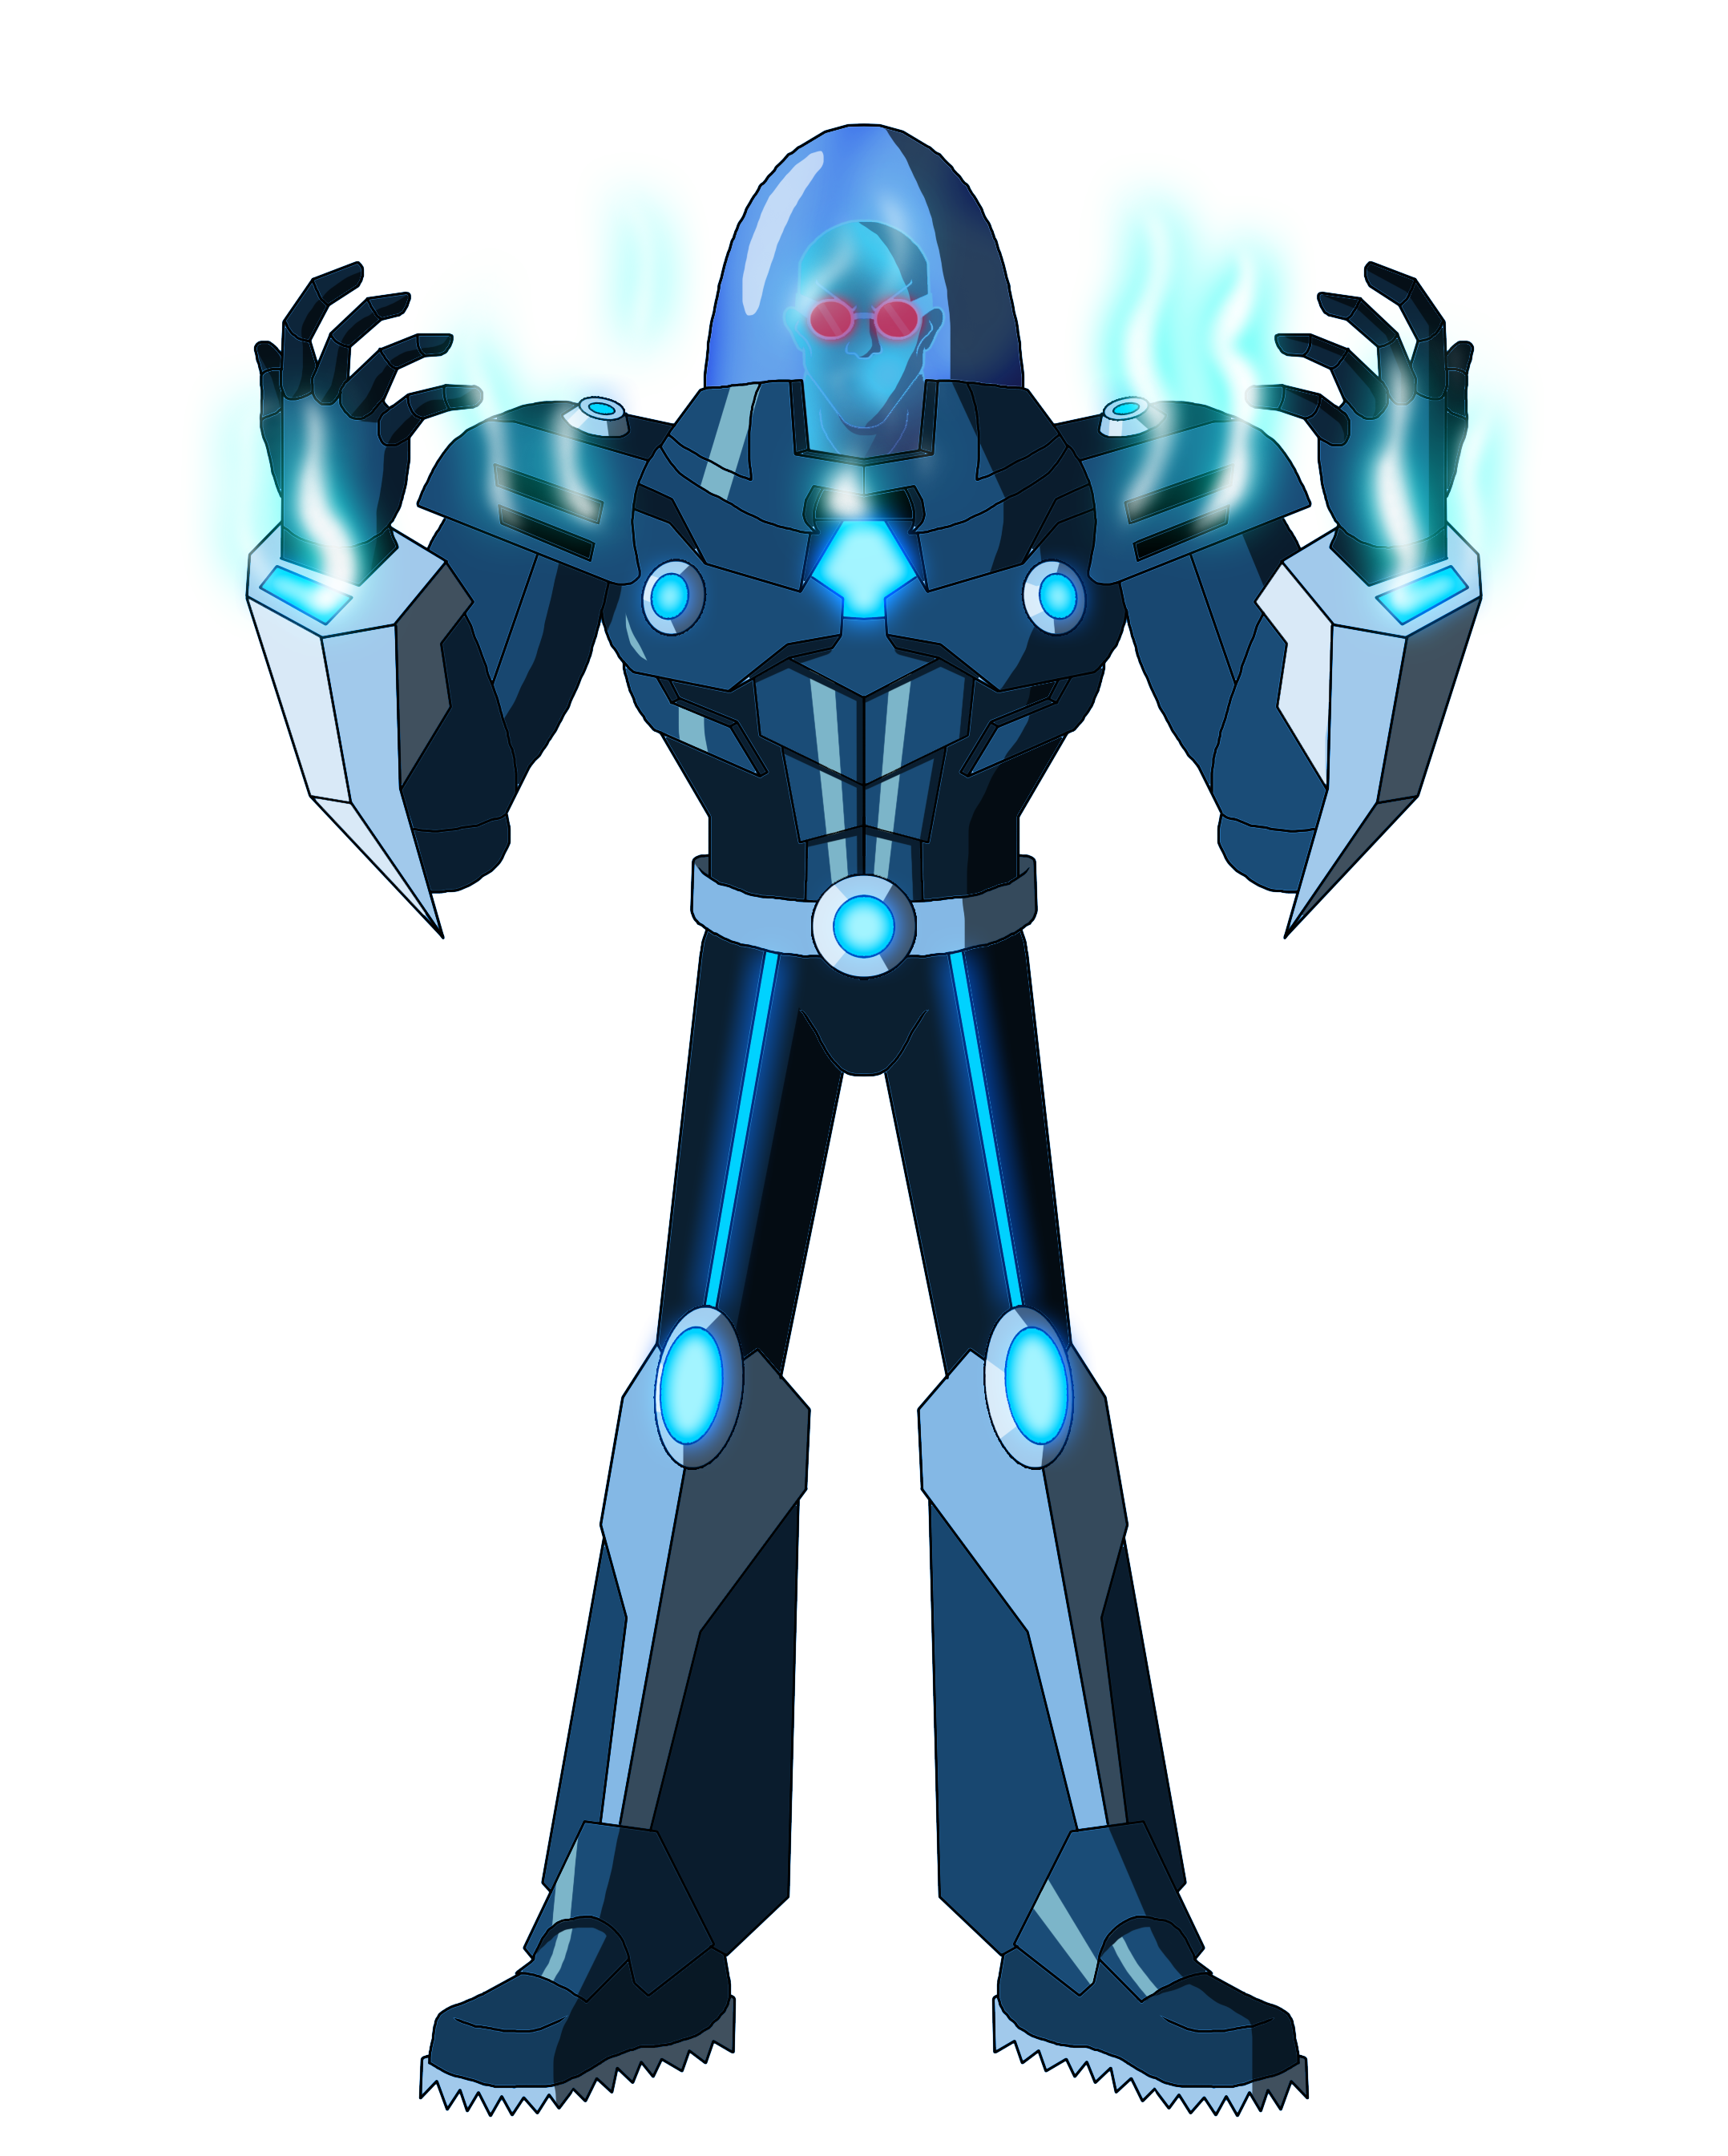 Mister Freeze Enforcer of Darkside by NostalgicSUPERFAN on DeviantArt